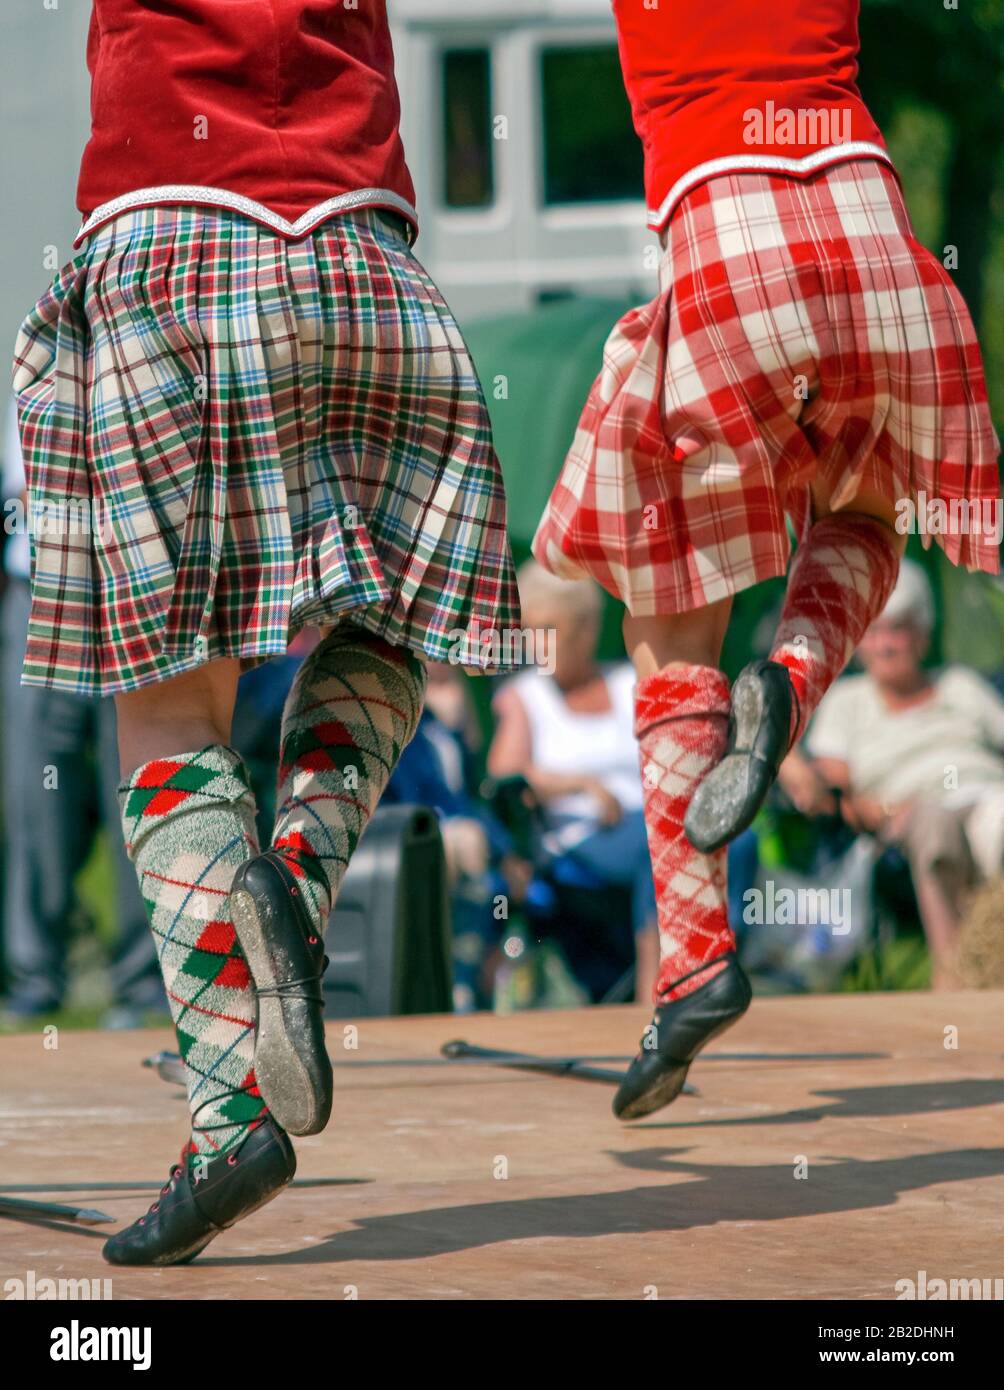 Jeune danseur écossais des Highlands qui a fait une danse d'épée lors d'une compétition à Colchester, dans l'Essex, en Angleterre. Banque D'Images